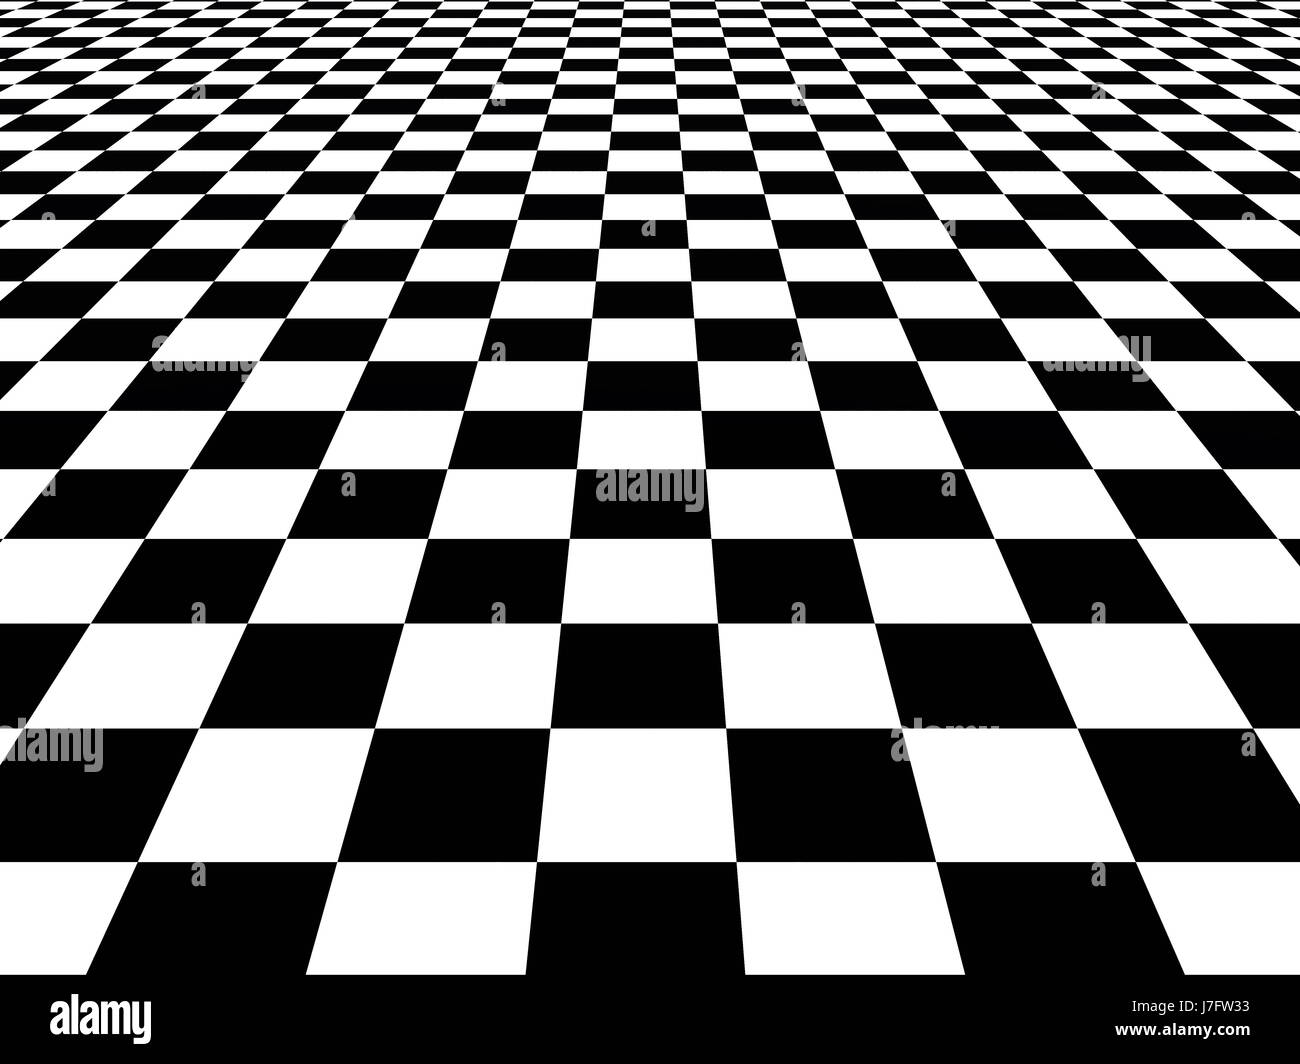 Schach Schachbrett unendliche Sinne Board spielen Halluzination Textur transponieren Stockfoto